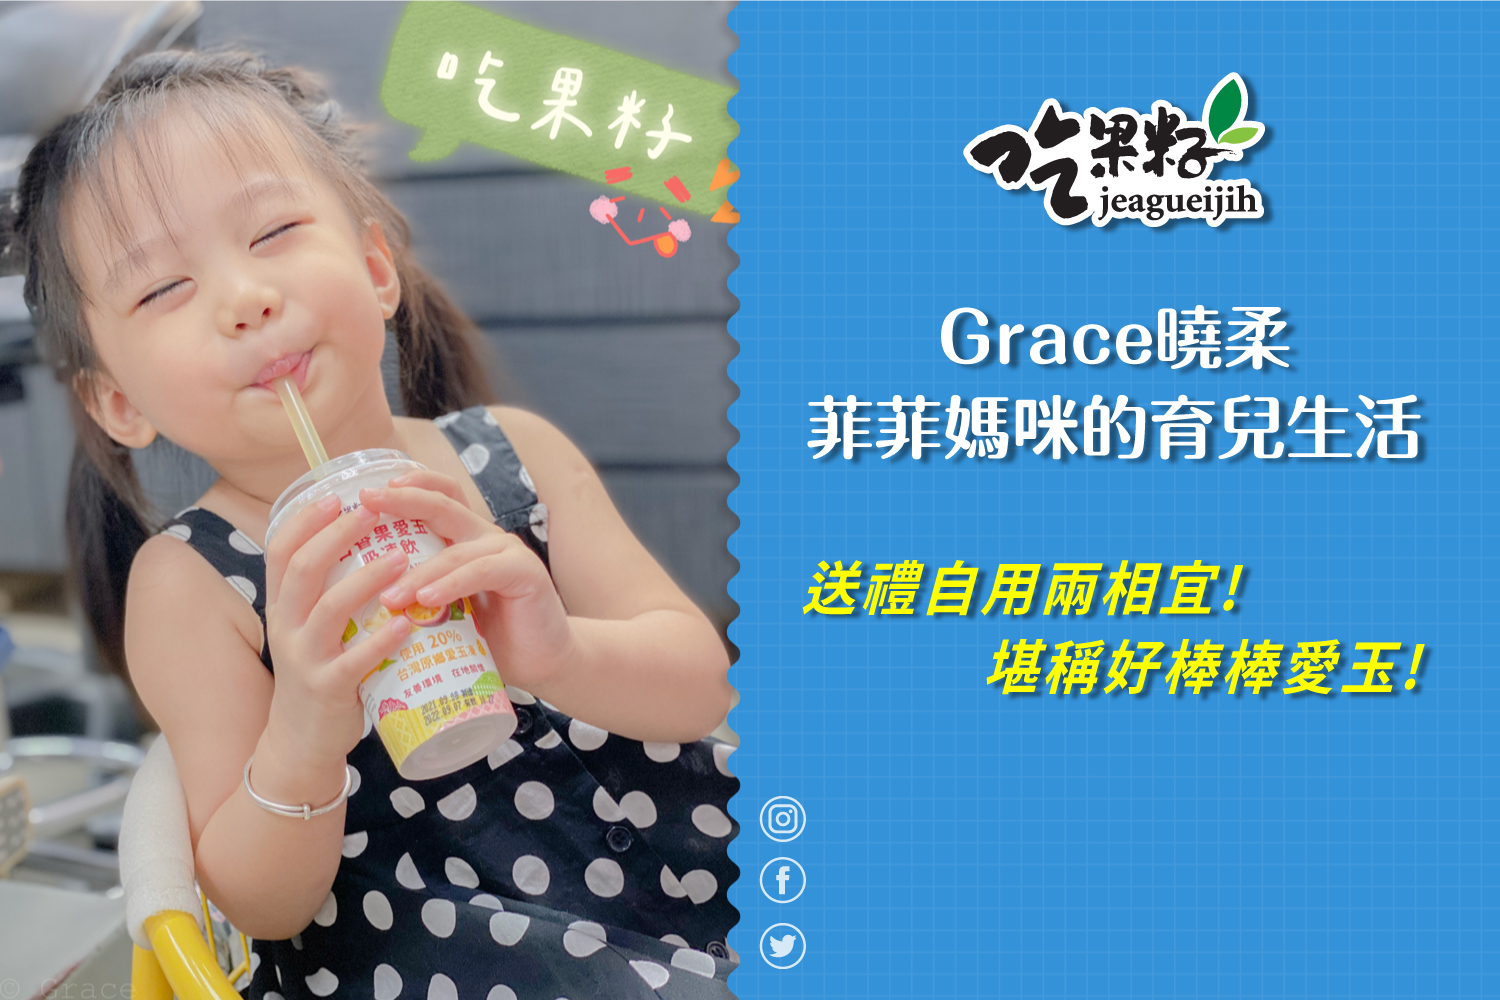 【部落客介紹】吃果籽愛玉吸凍飲6入-Grace曉柔-菲菲媽咪的育兒生活